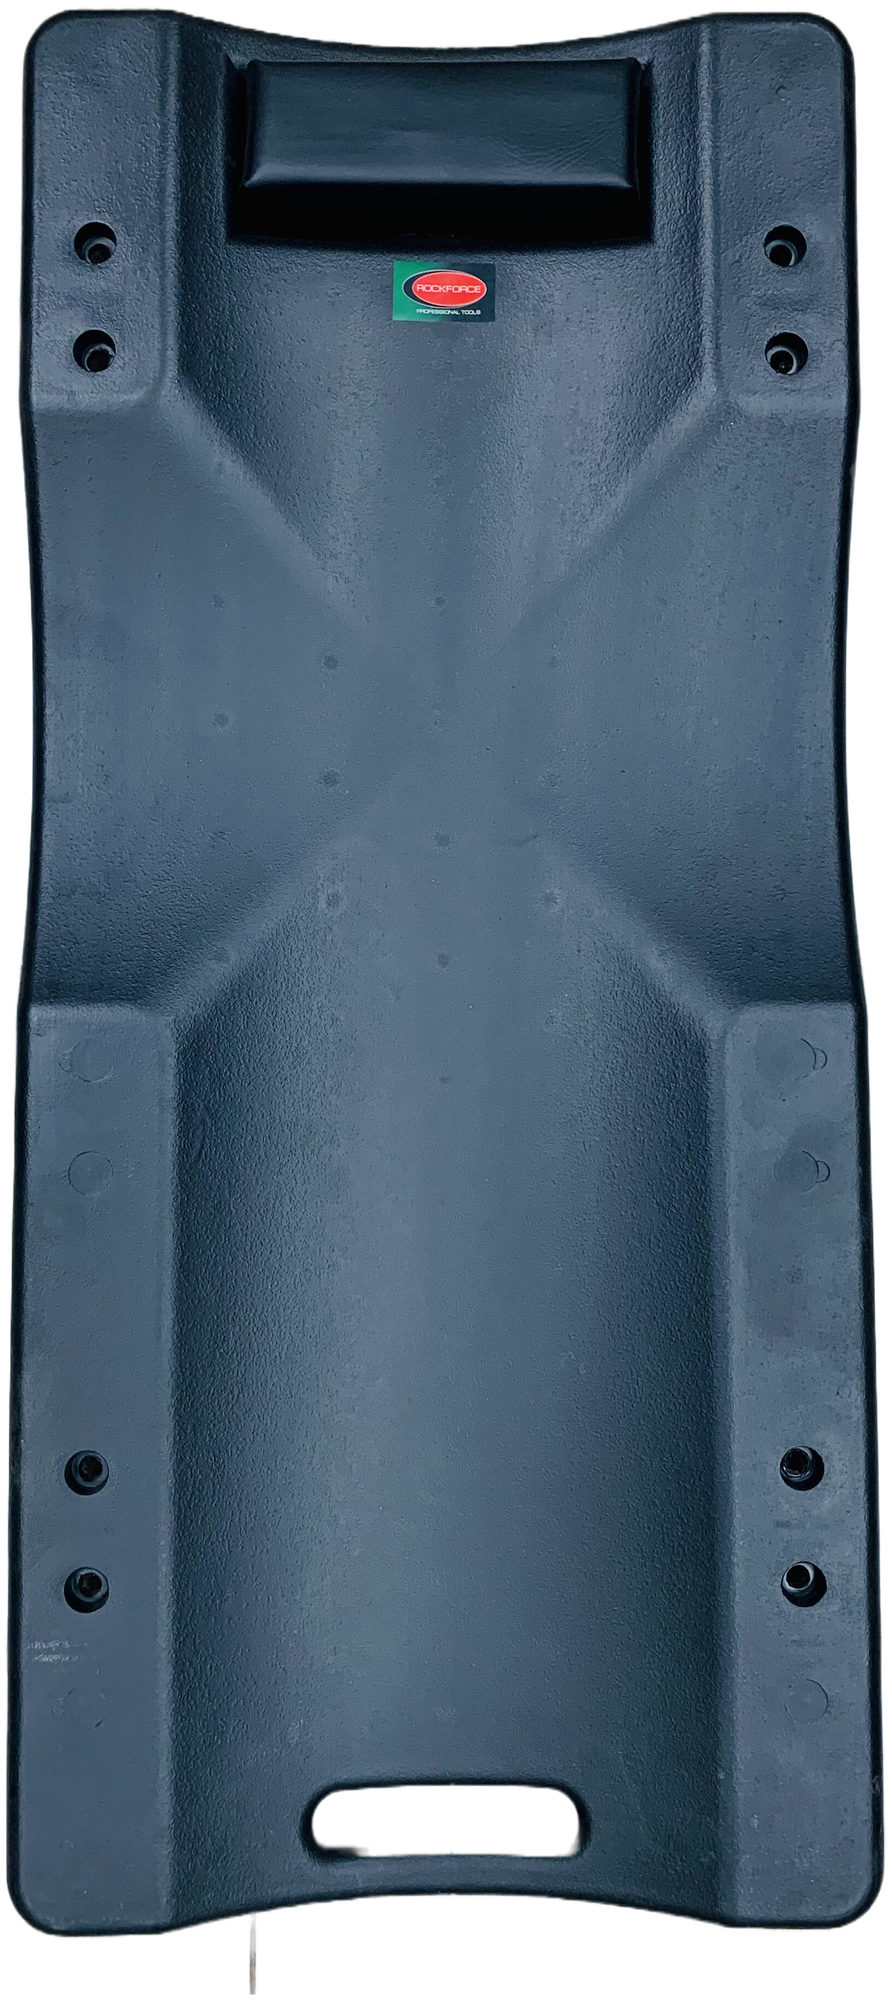 Ремонтный пластиковый подкатной лежак на 4-х колесах ROCKFORCE 400х920мм RF-TRH6803